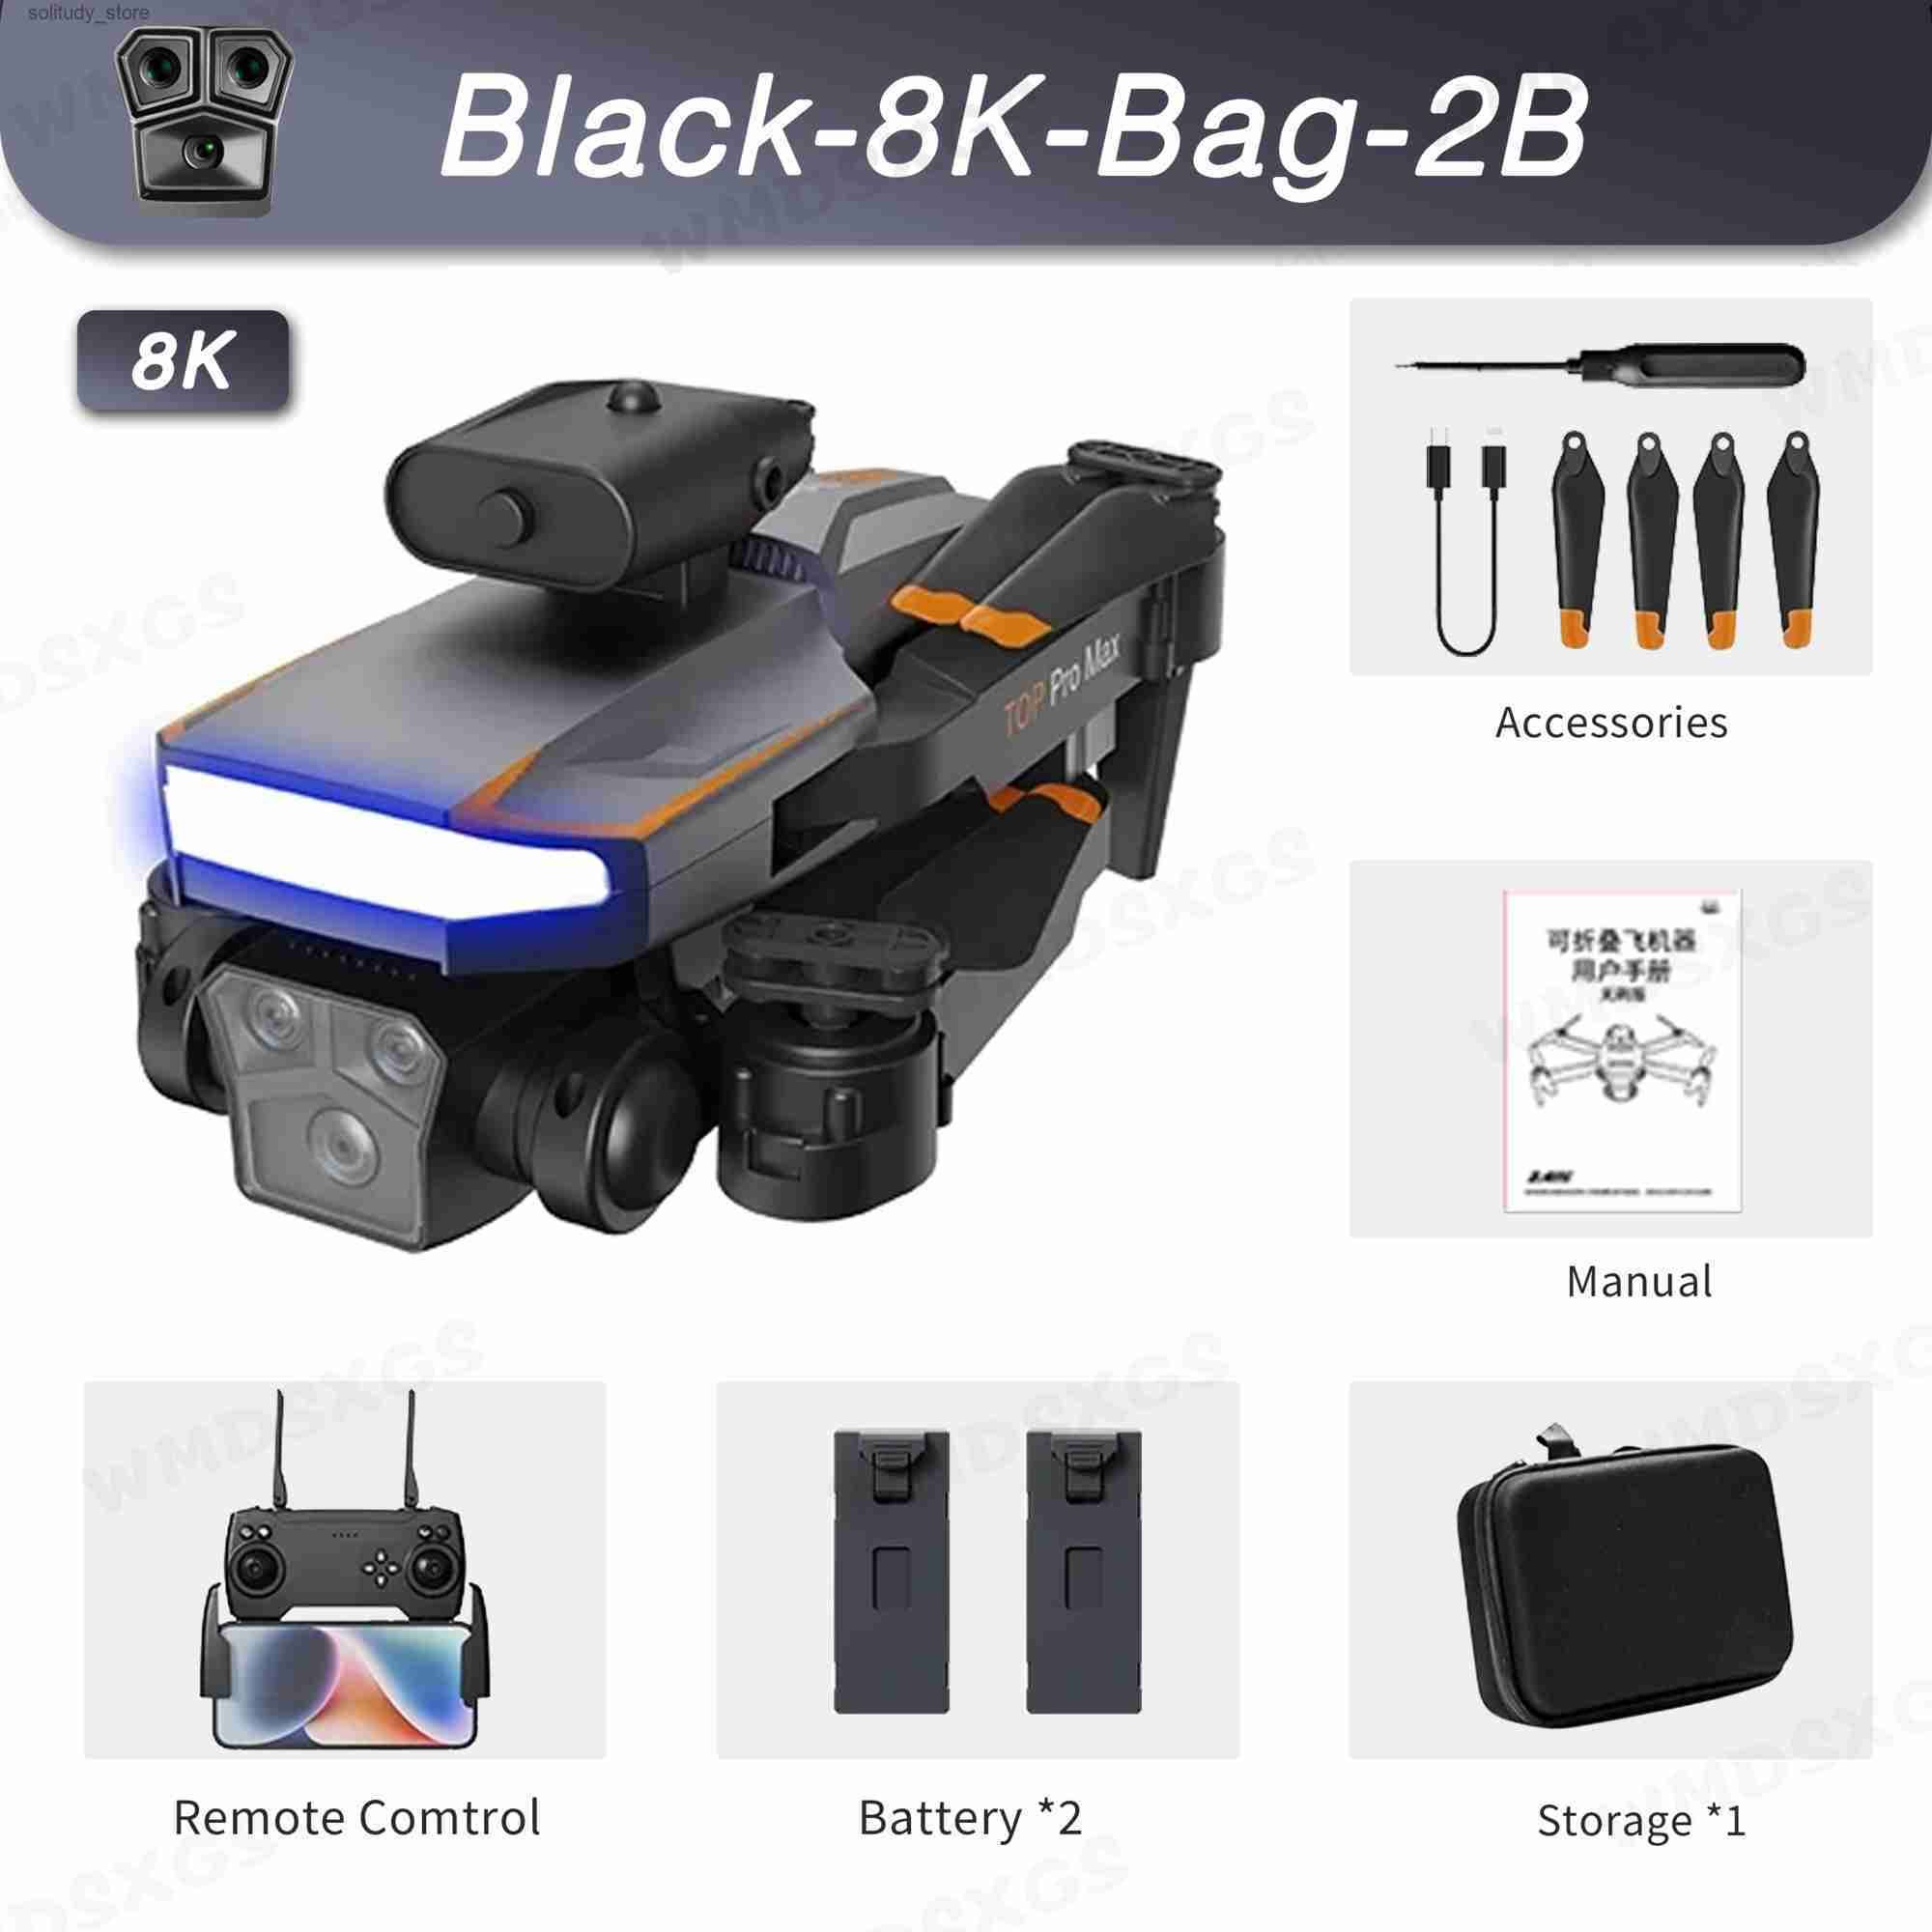 Black-8k-Bag-2B